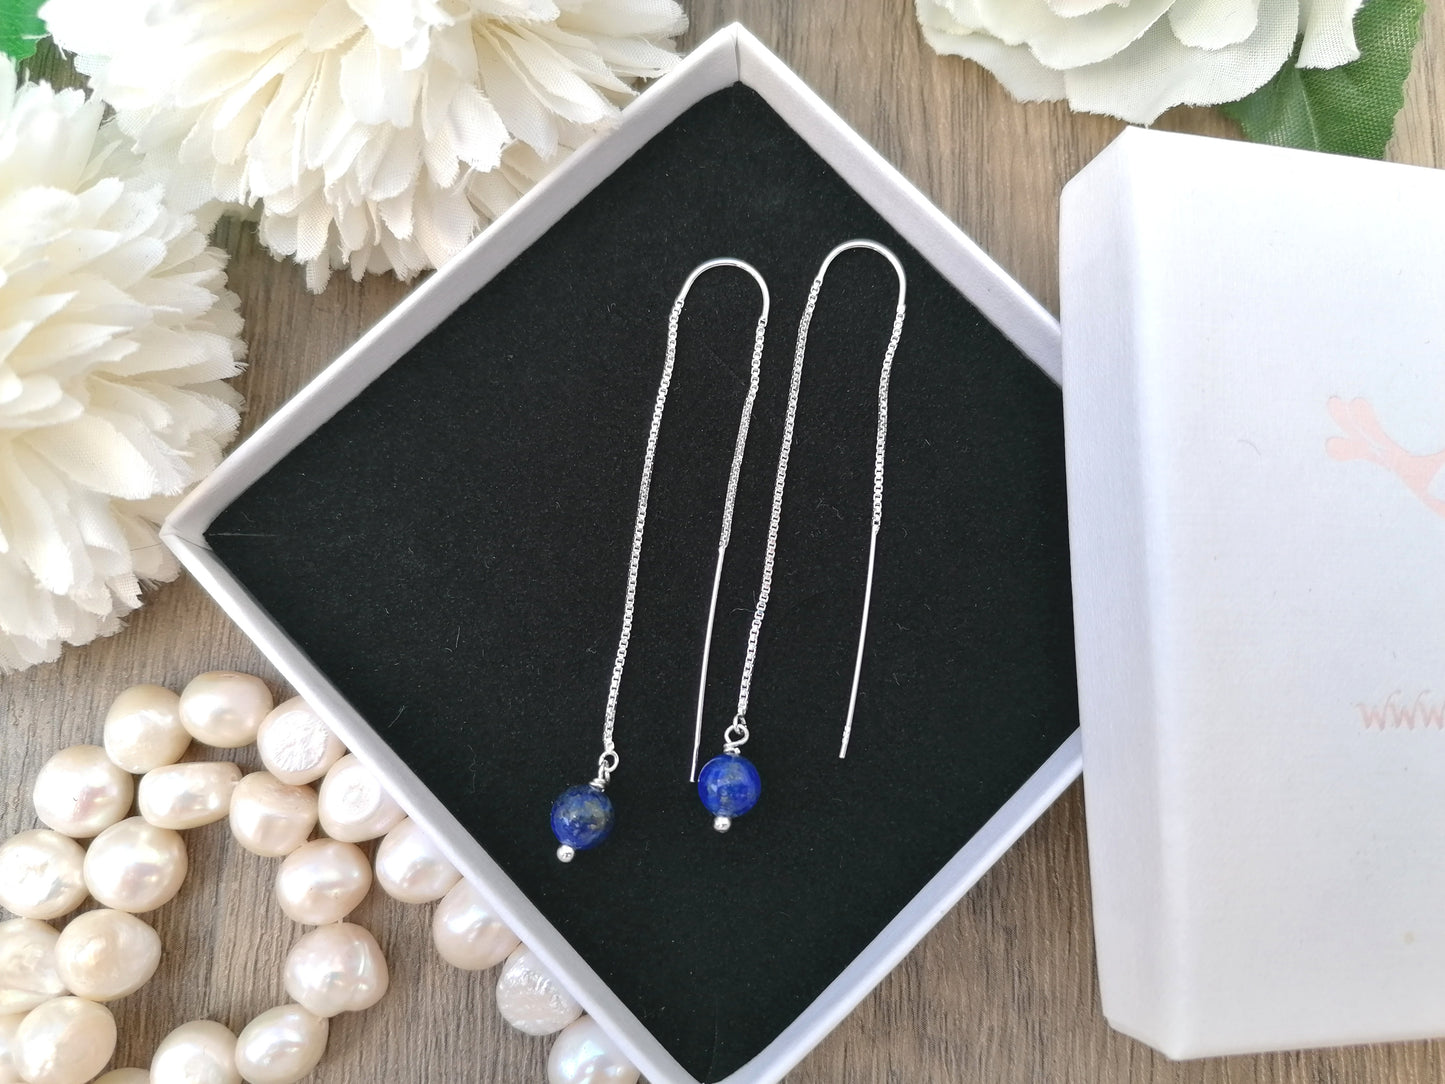 Lapis lazuli threader earrings in sterling silver. September birthstone earrings.